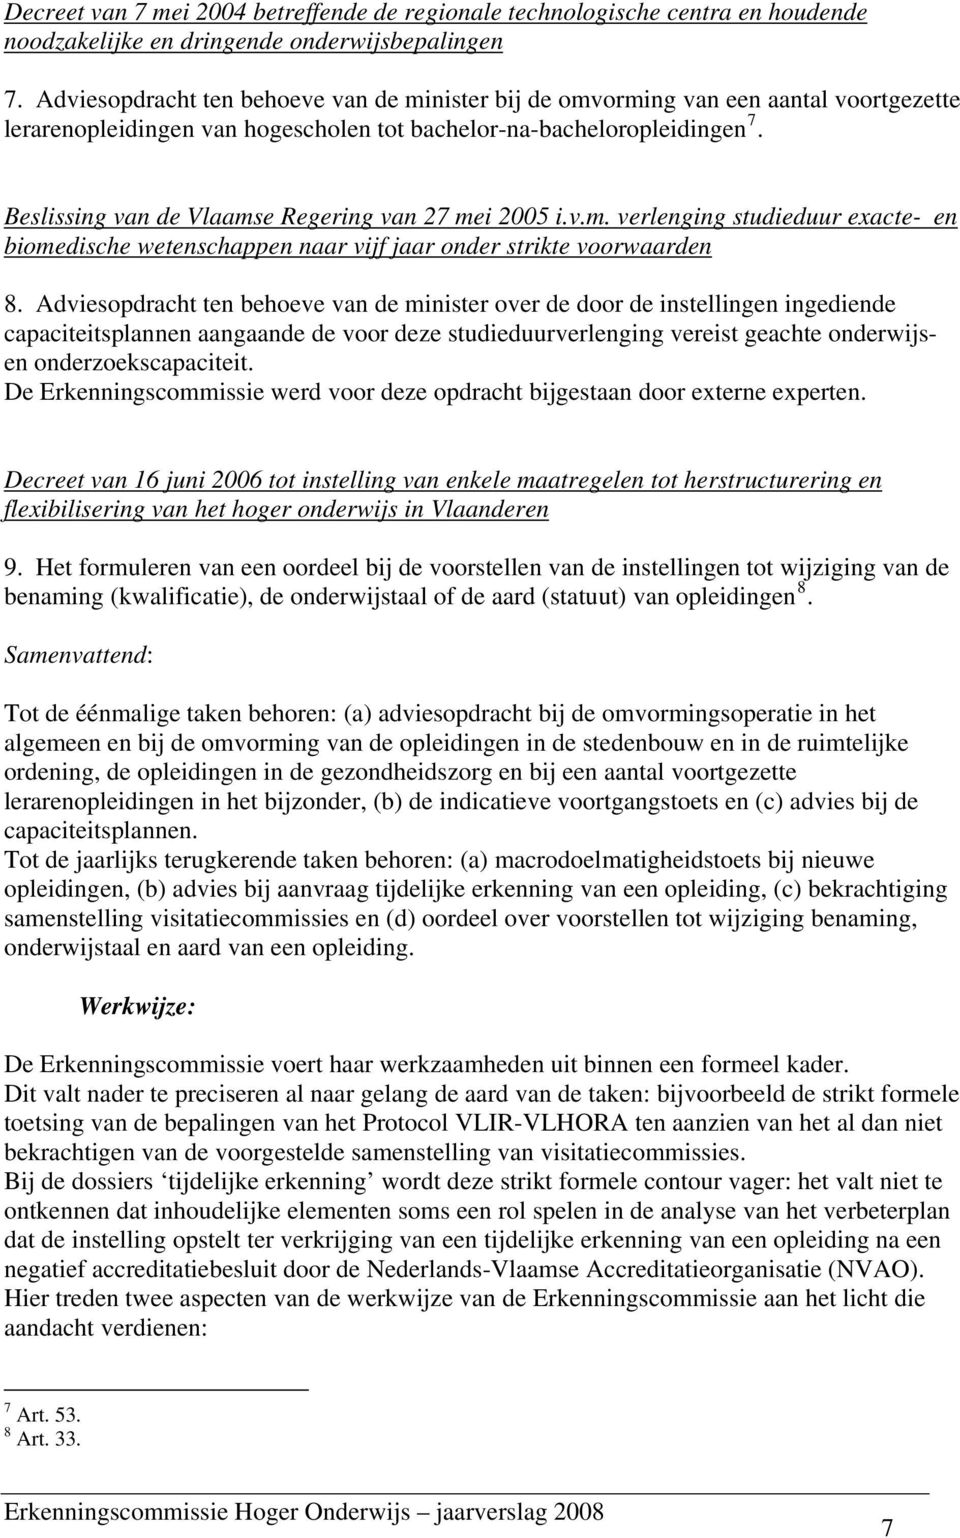 Beslissing van de Vlaamse Regering van 27 mei 2005 i.v.m. verlenging studieduur exacte- en biomedische wetenschappen naar vijf jaar onder strikte voorwaarden 8.